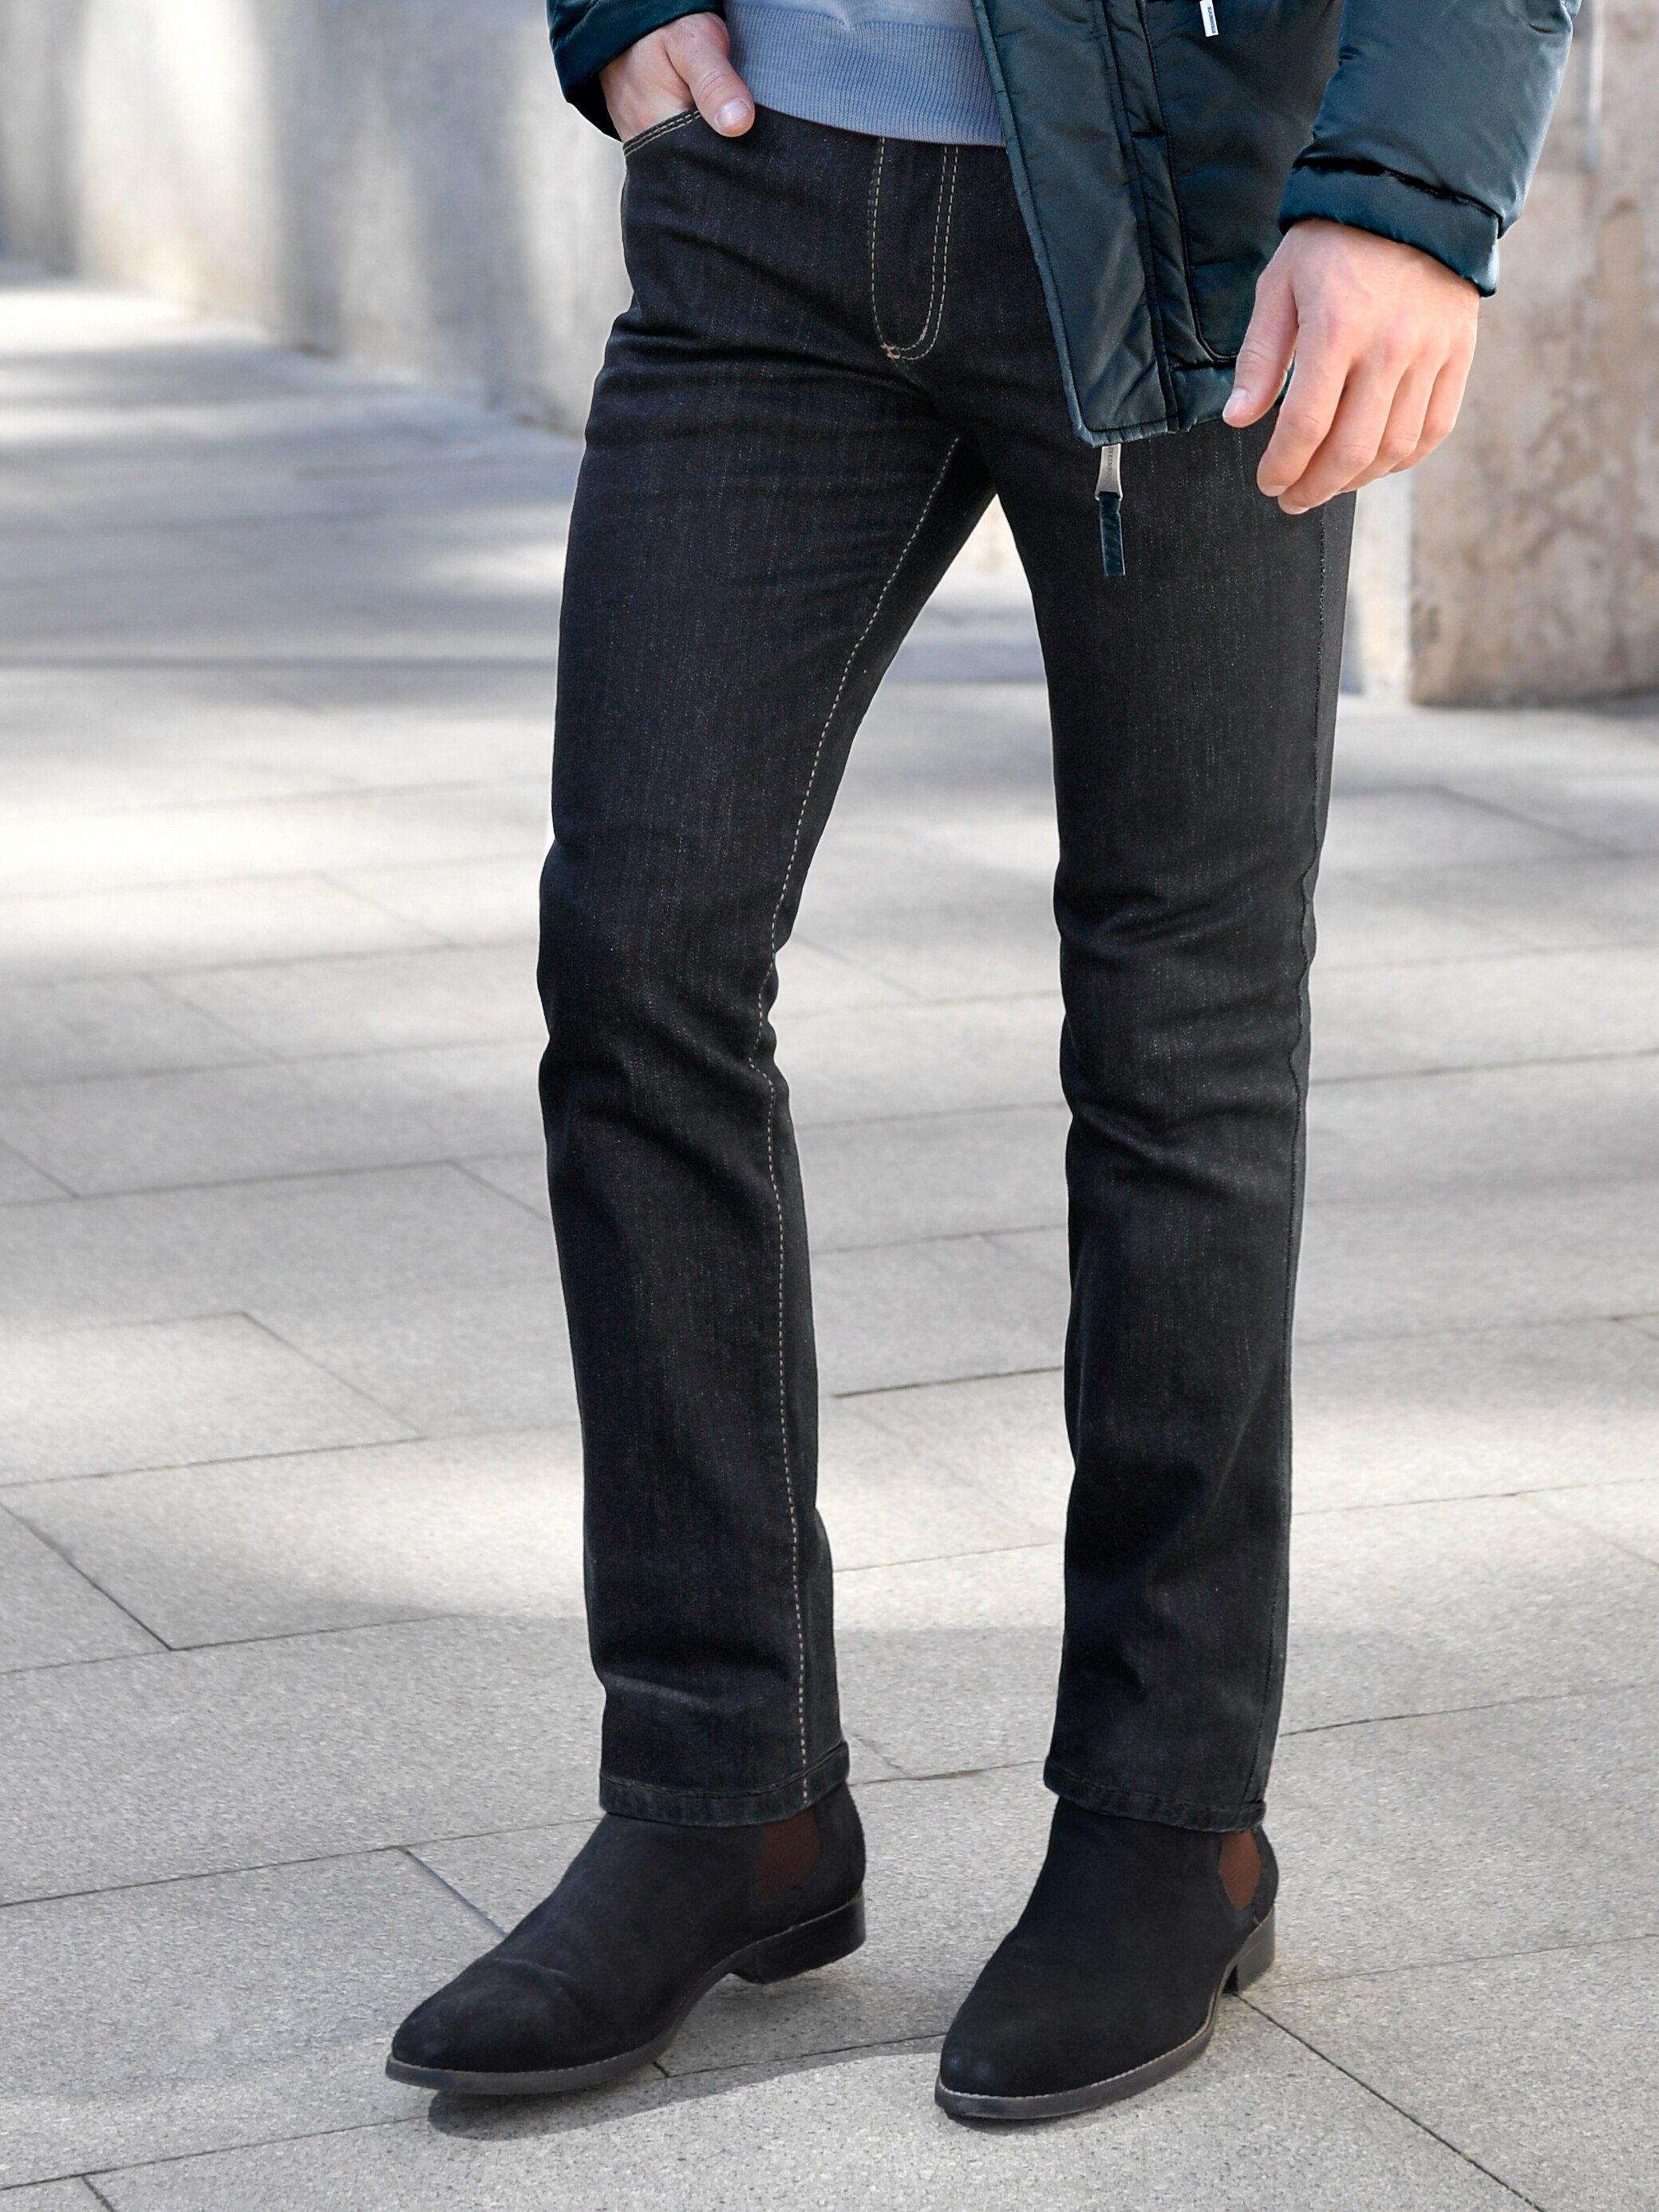 JOKER - Jeans 32 inch - Model FREDDY